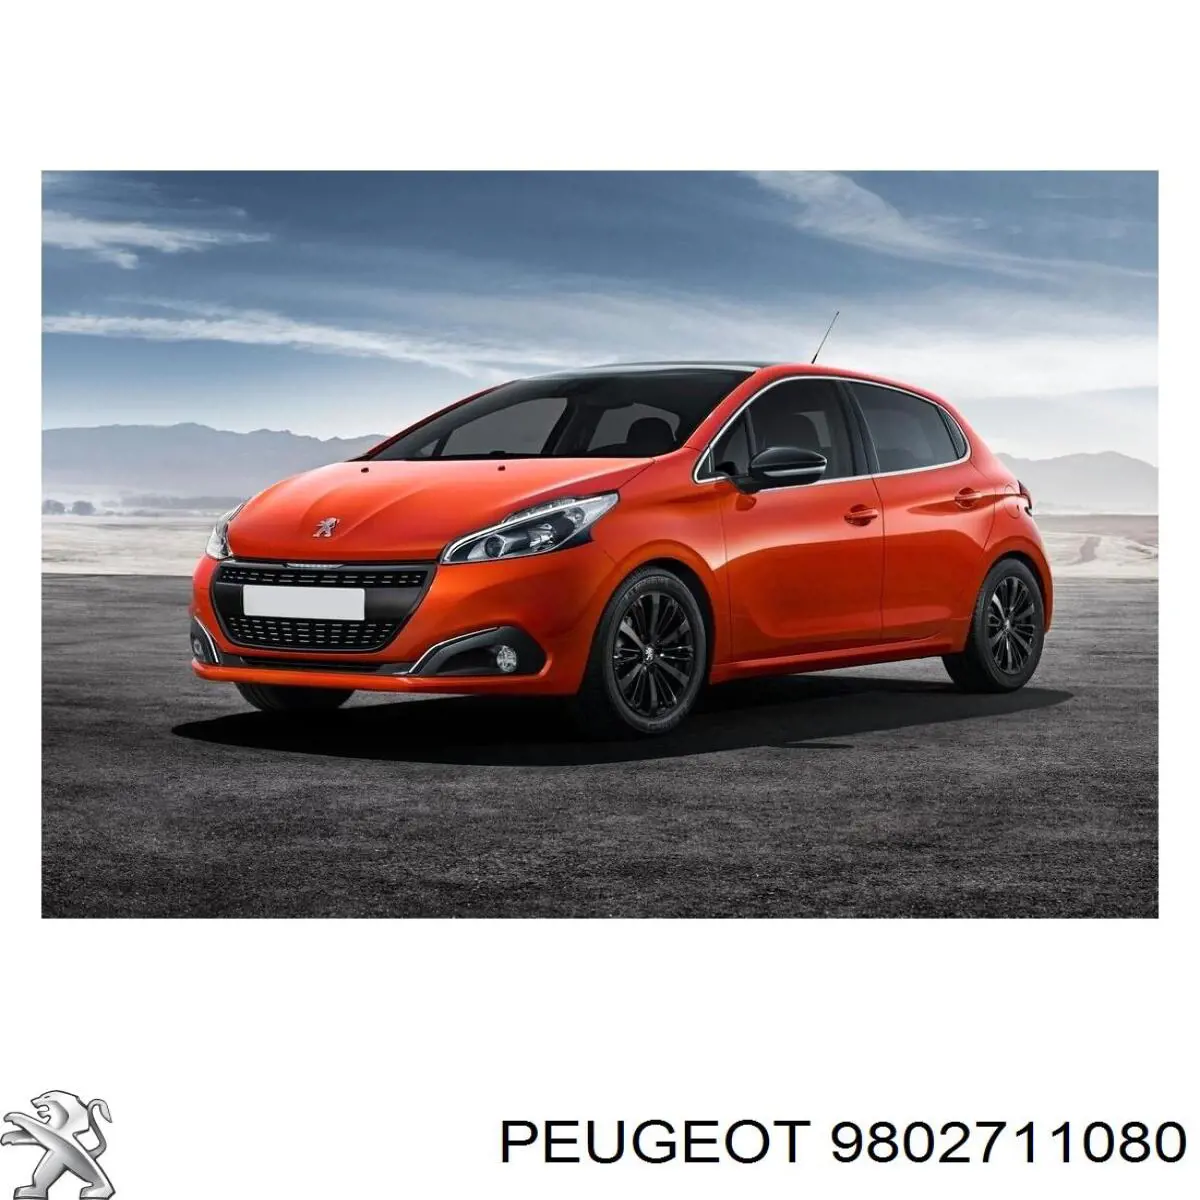 9802711080 Peugeot/Citroen guardabarros interior, aleta delantera, derecho